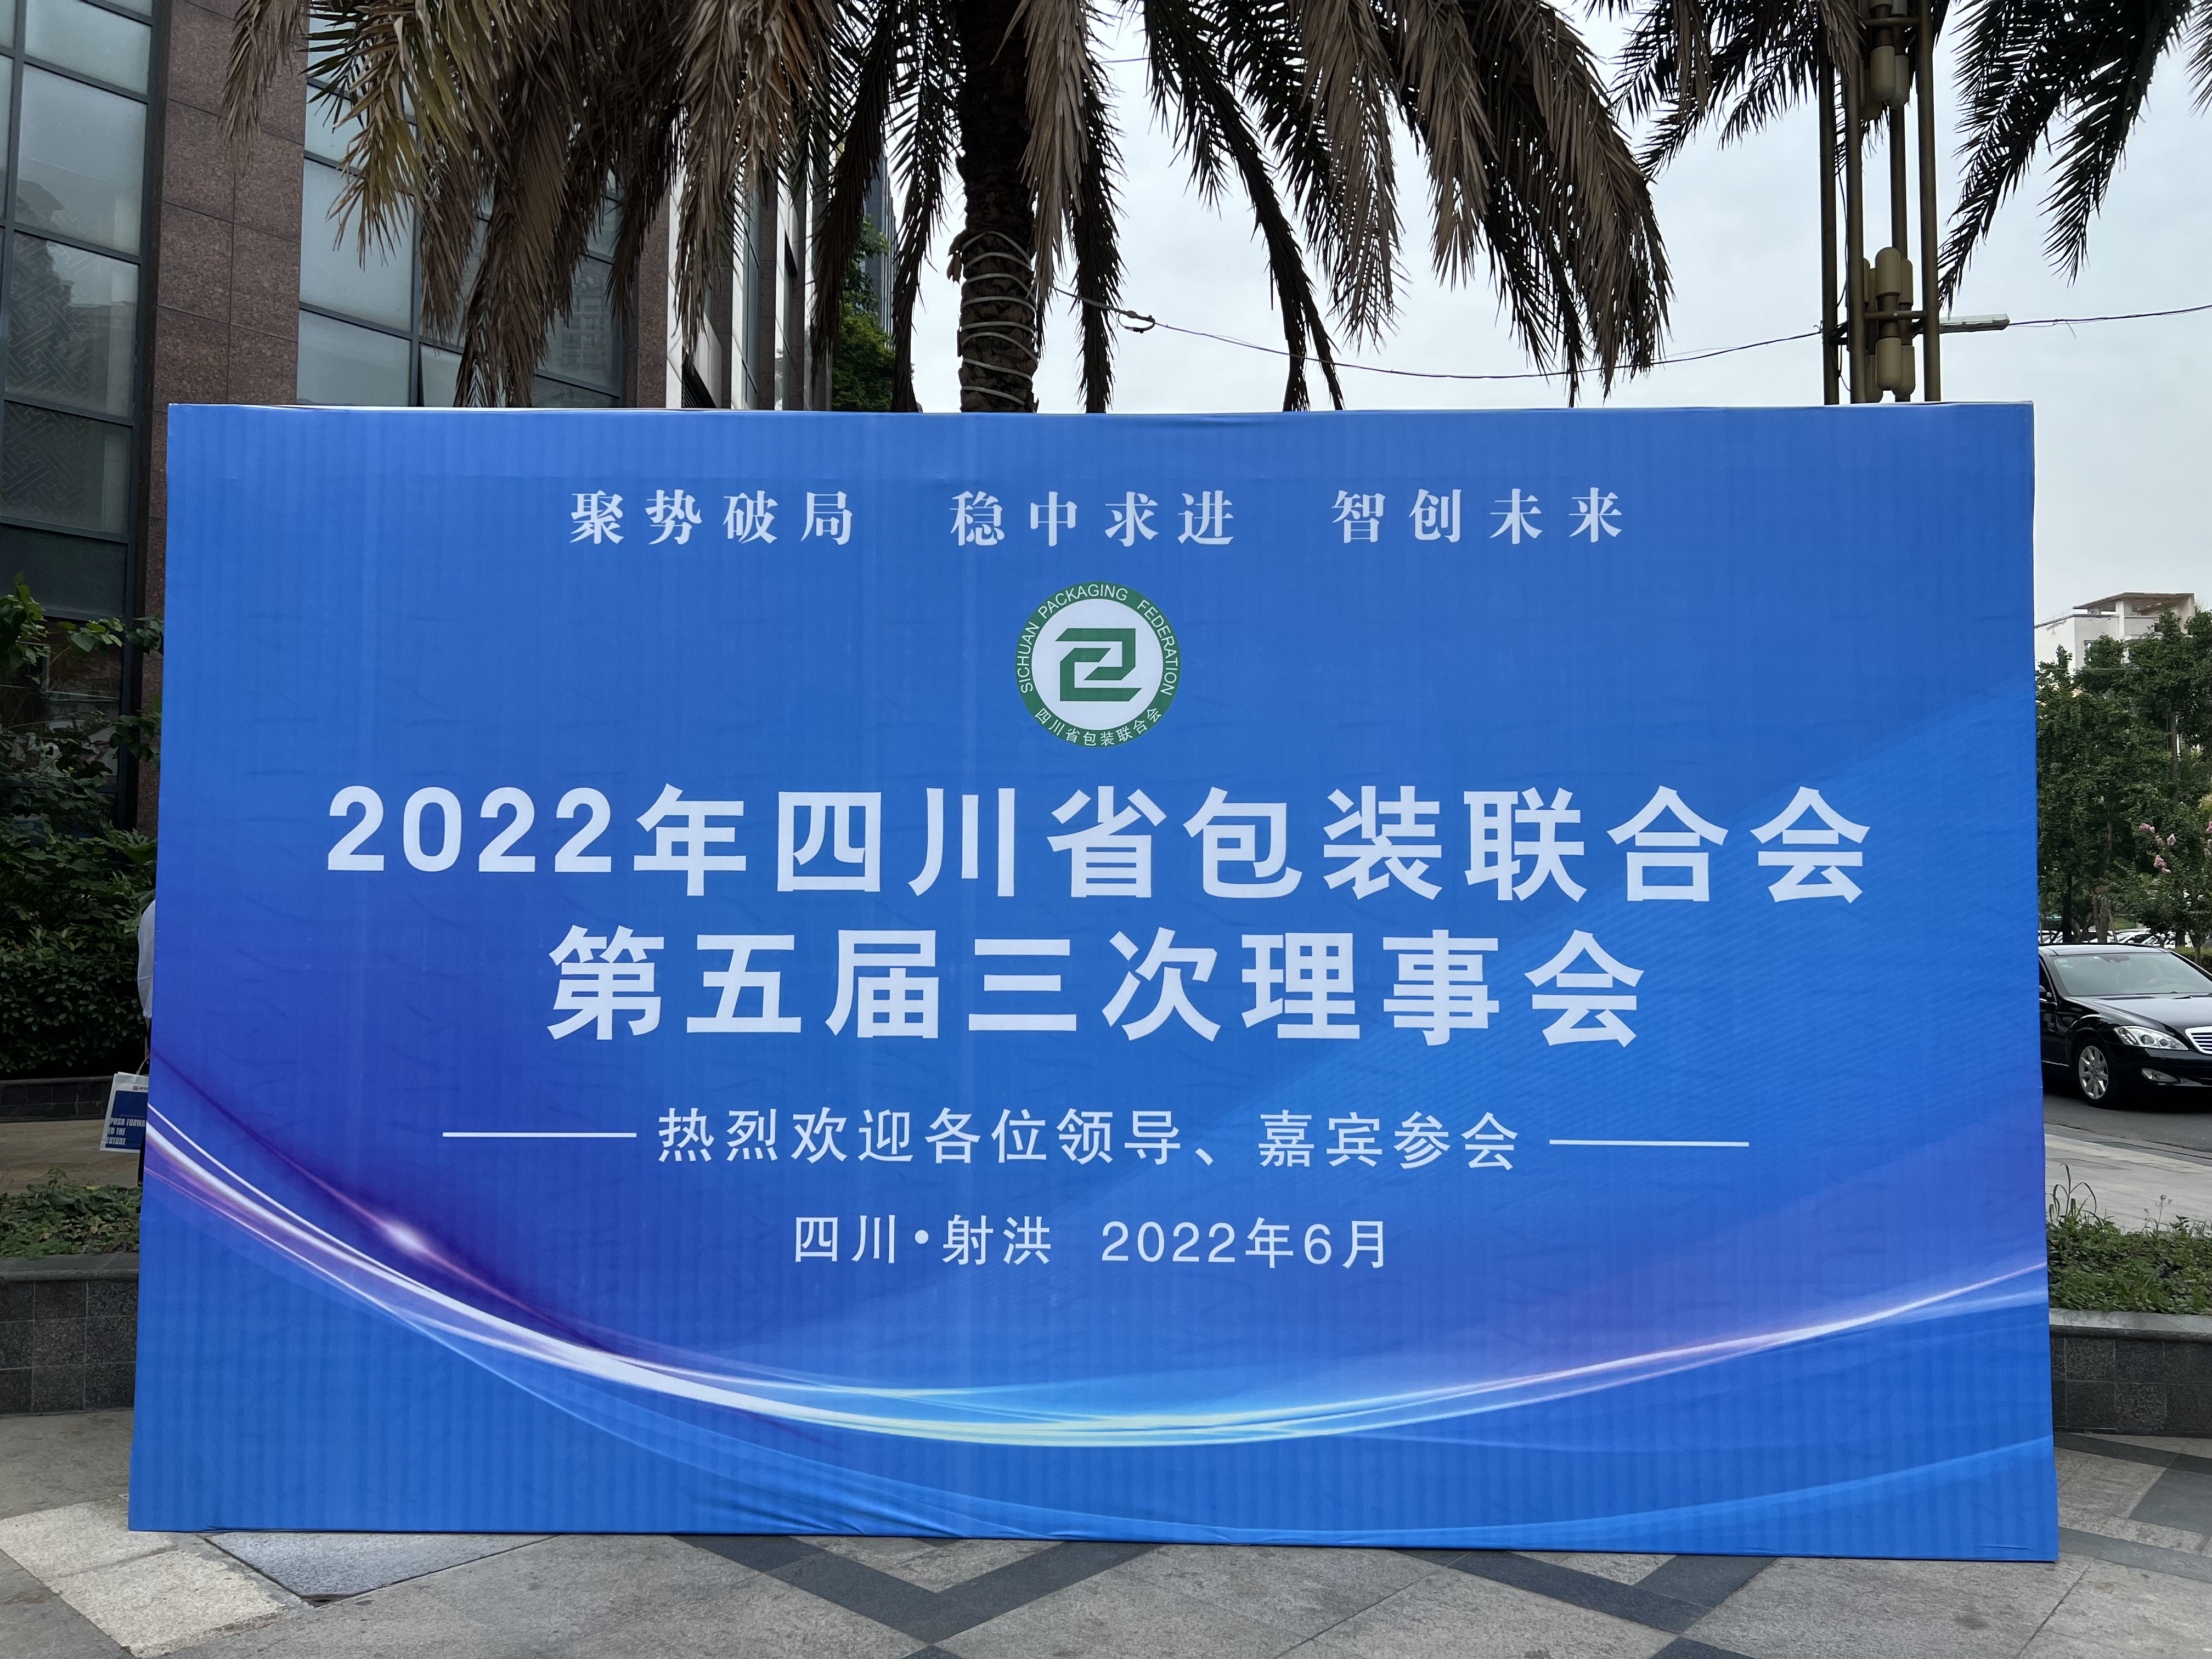 热烈祝贺 “2022年四川省包装联合会” 在我司胜利召开